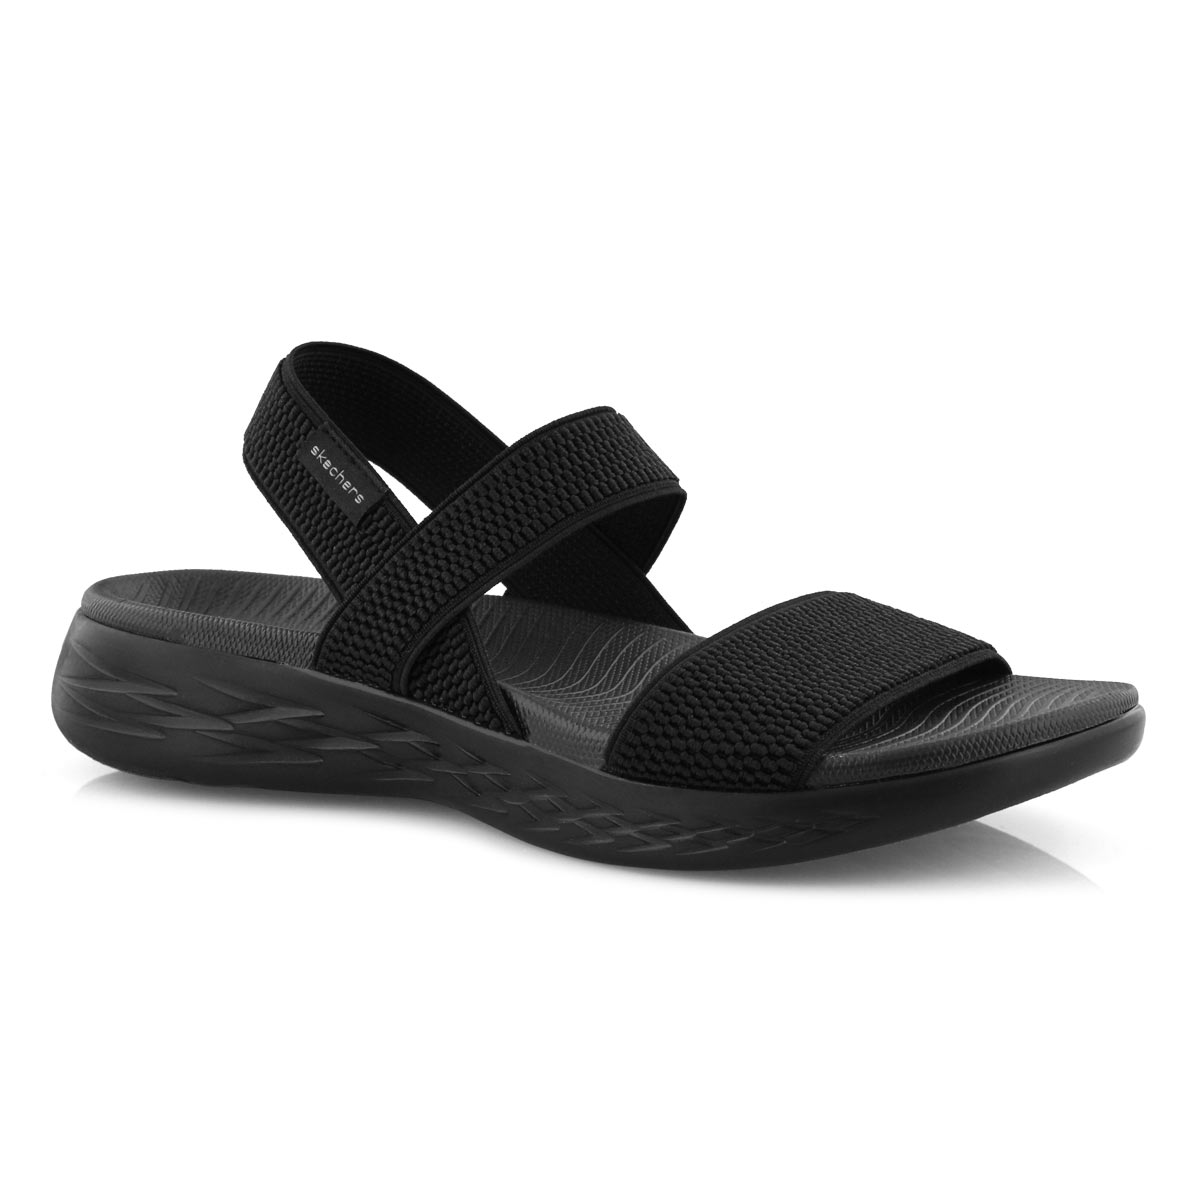 women's skechers sandals Online 